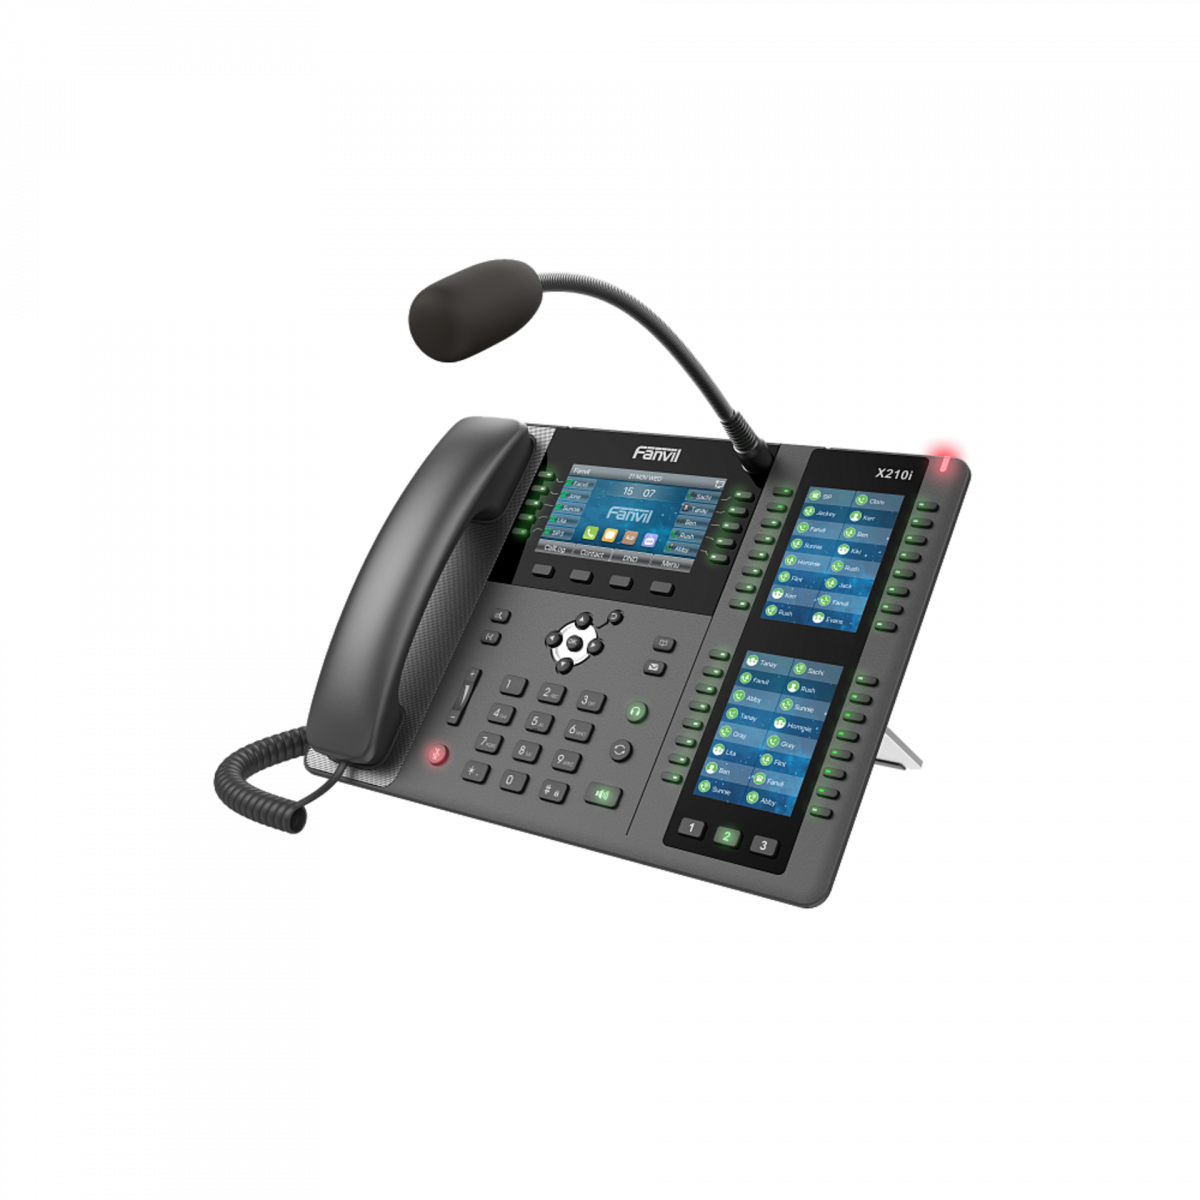 IP-телефон Fanvil X210i, цветной экран, 20 аккаунтов